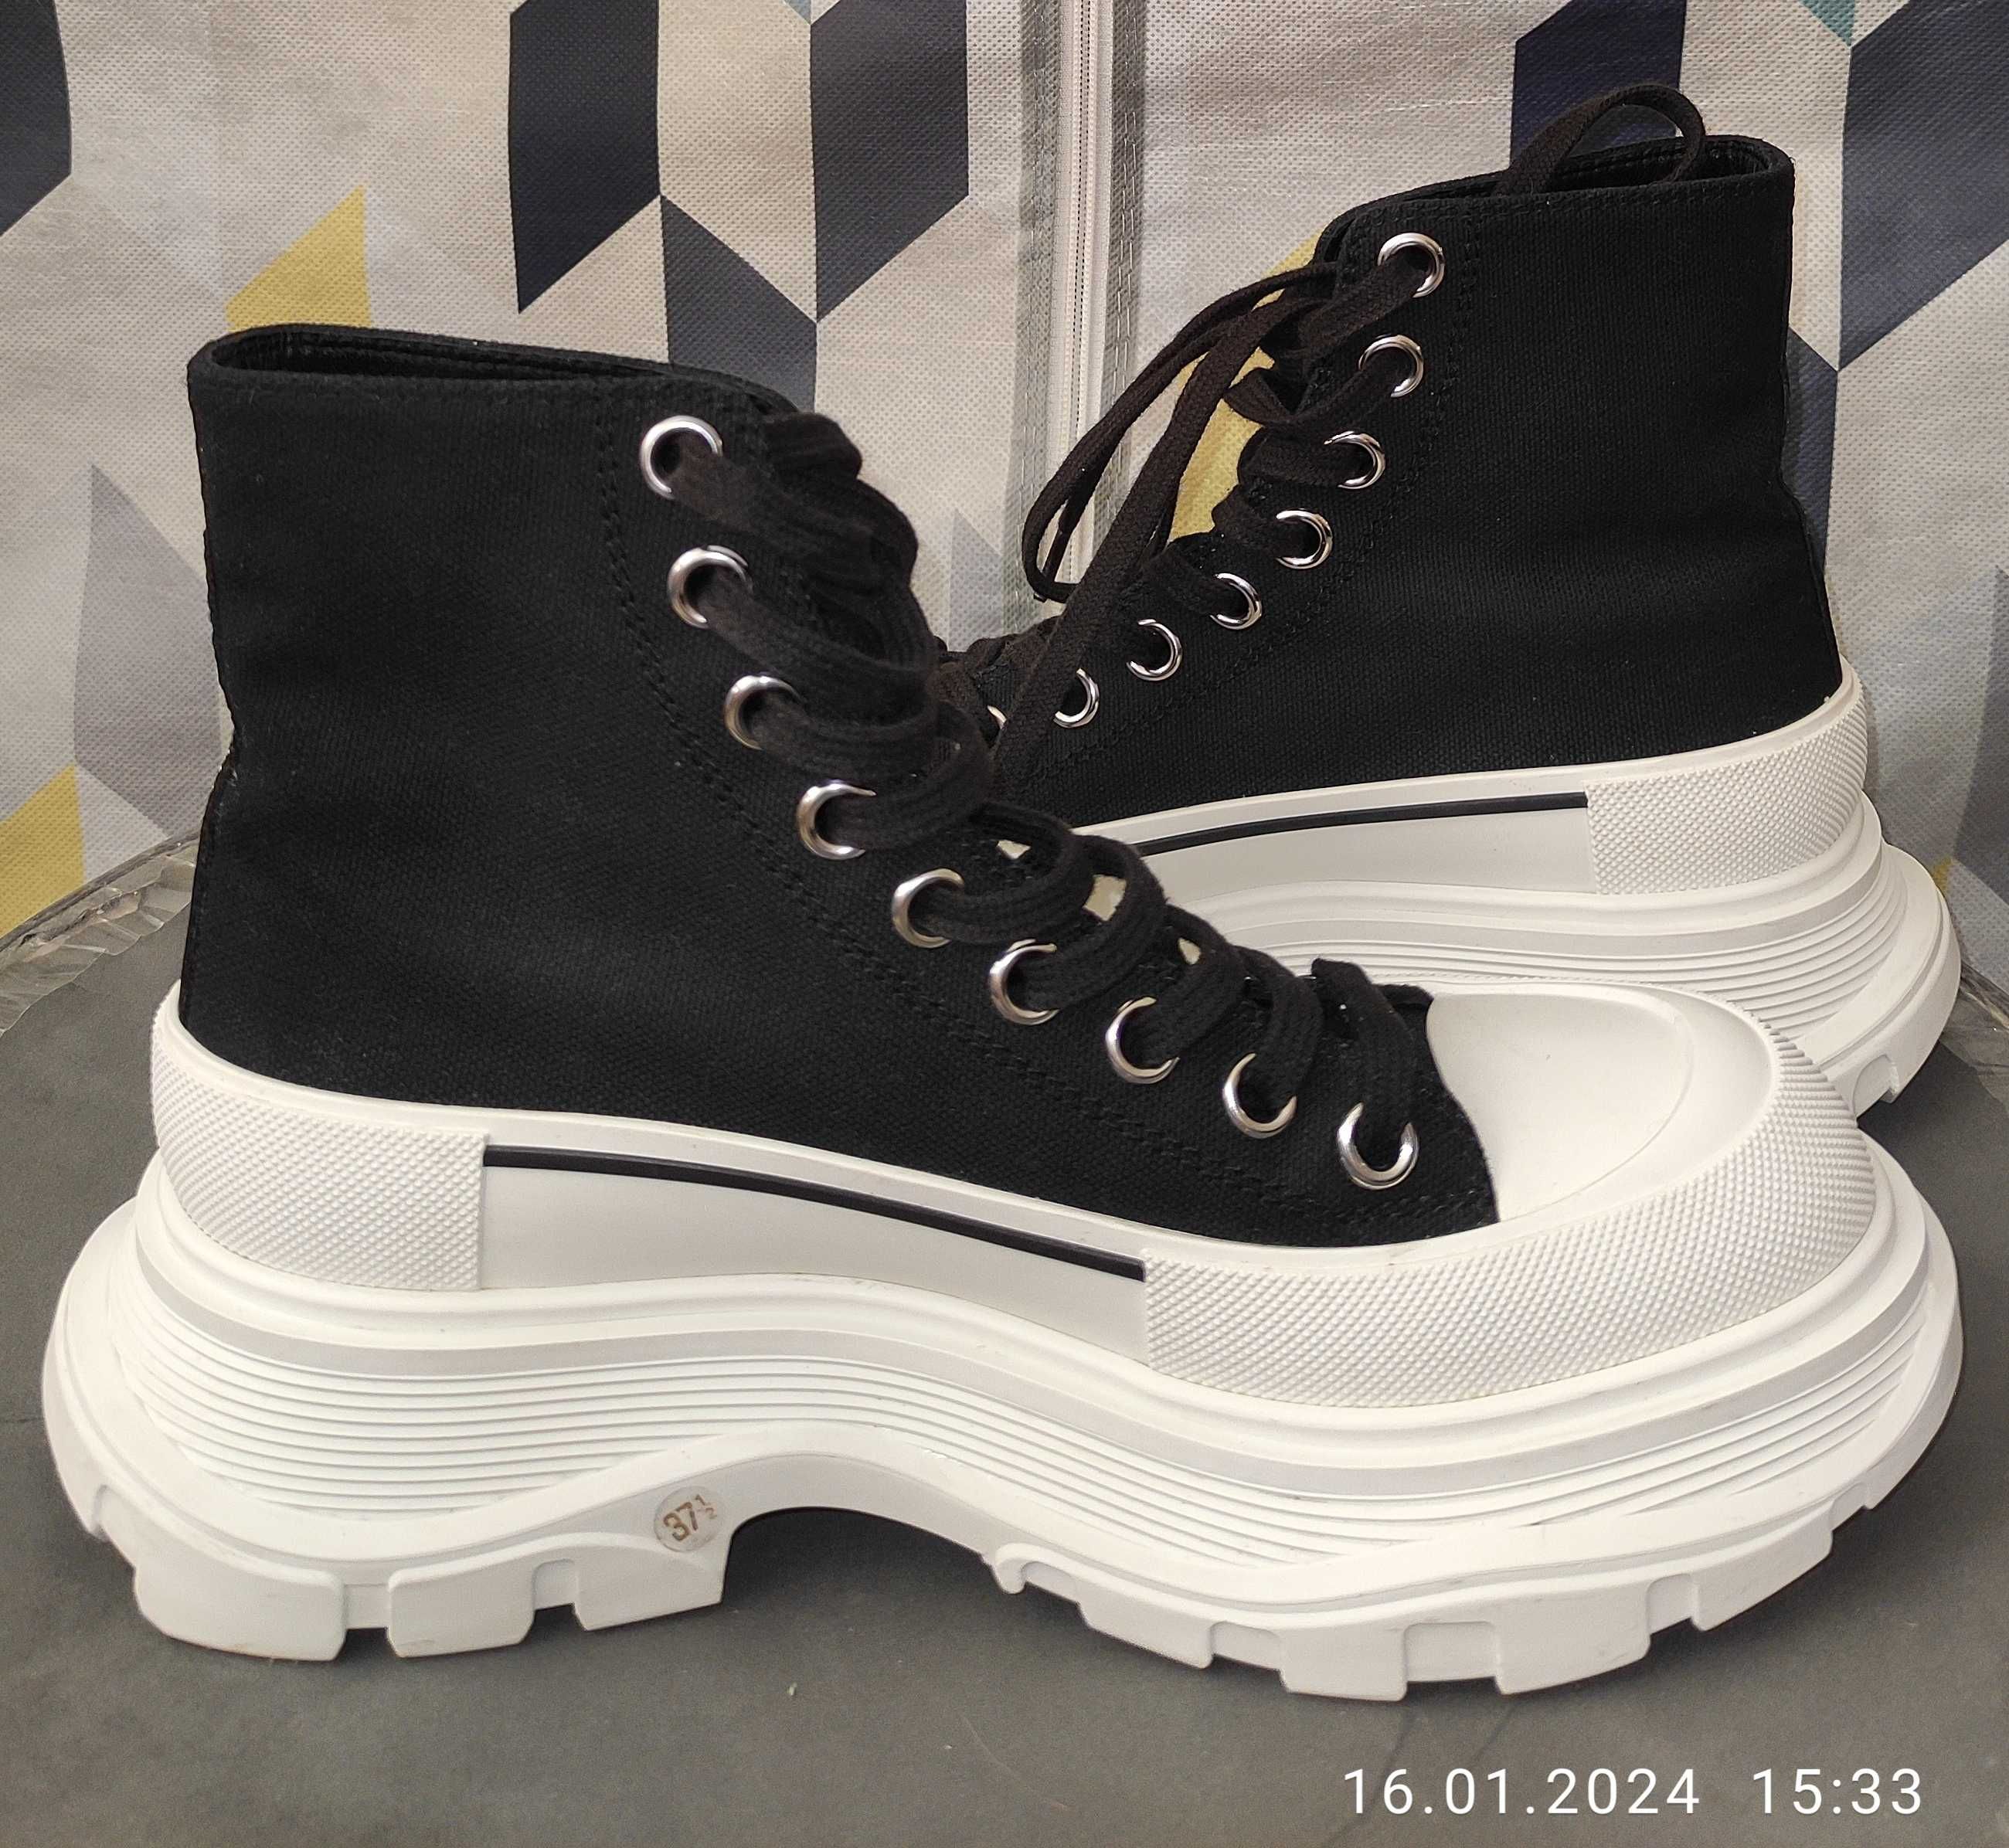 Ботинки Alexander McQueen Tread Slick, черные с белым